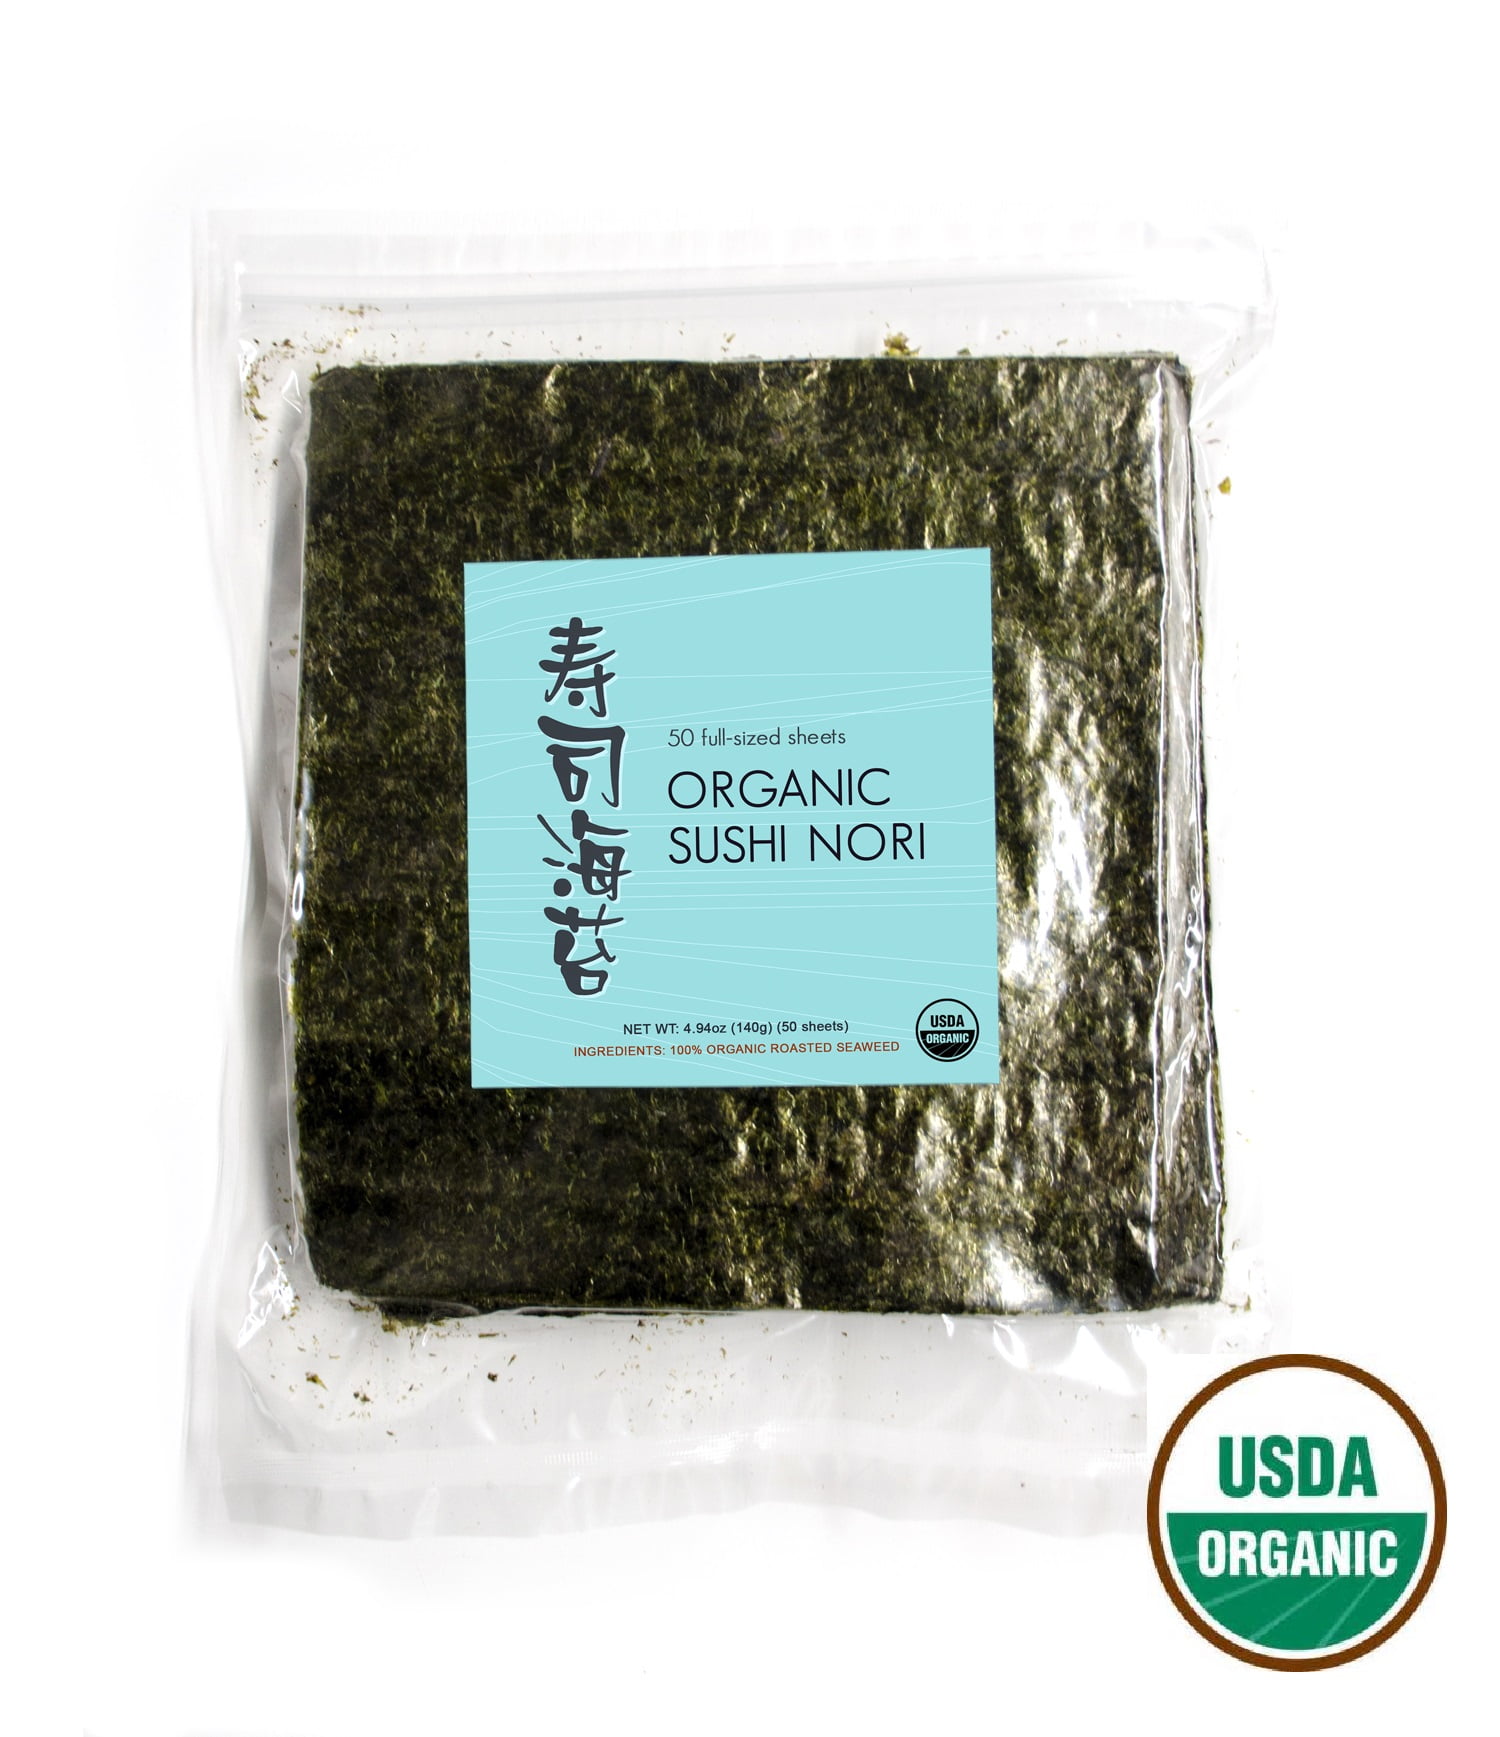 J-Basket Premium Sushi Nori Roasted Seaweed 100 Full Sheets 8.8oz /250 g 